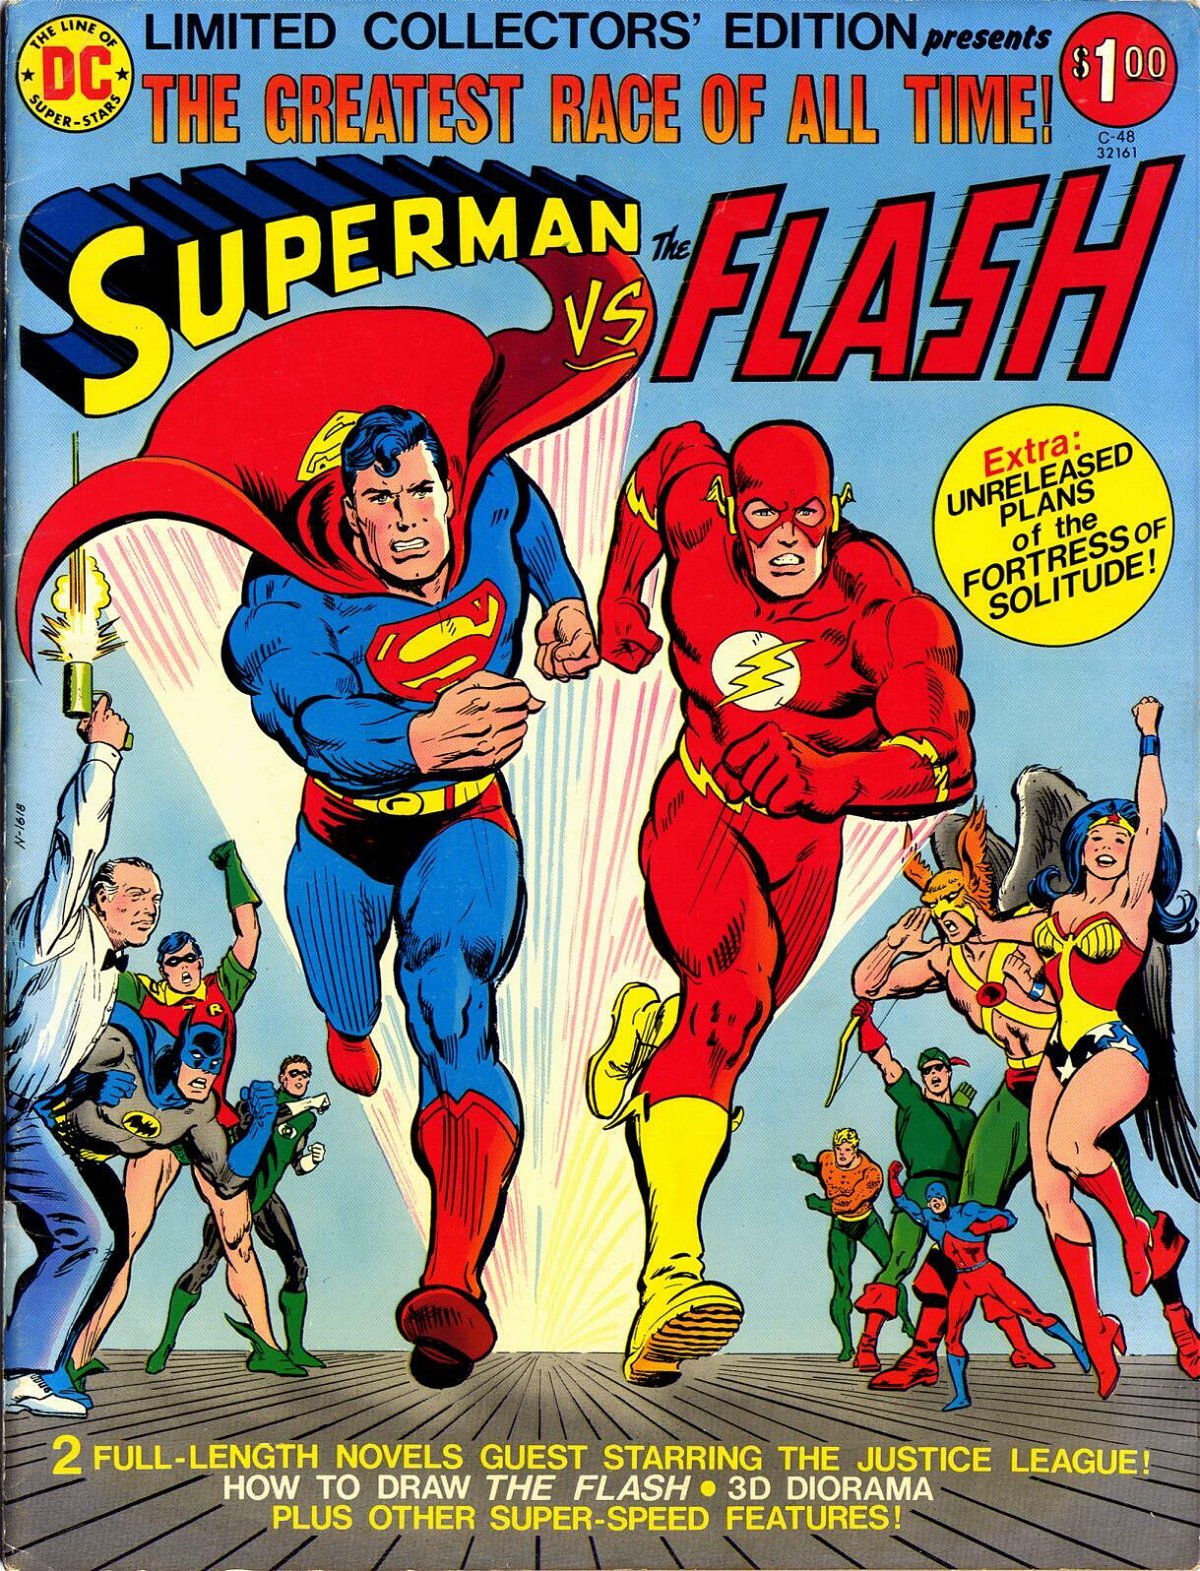 Copertina della classica corsa tra Superman e Flash, nel 1979